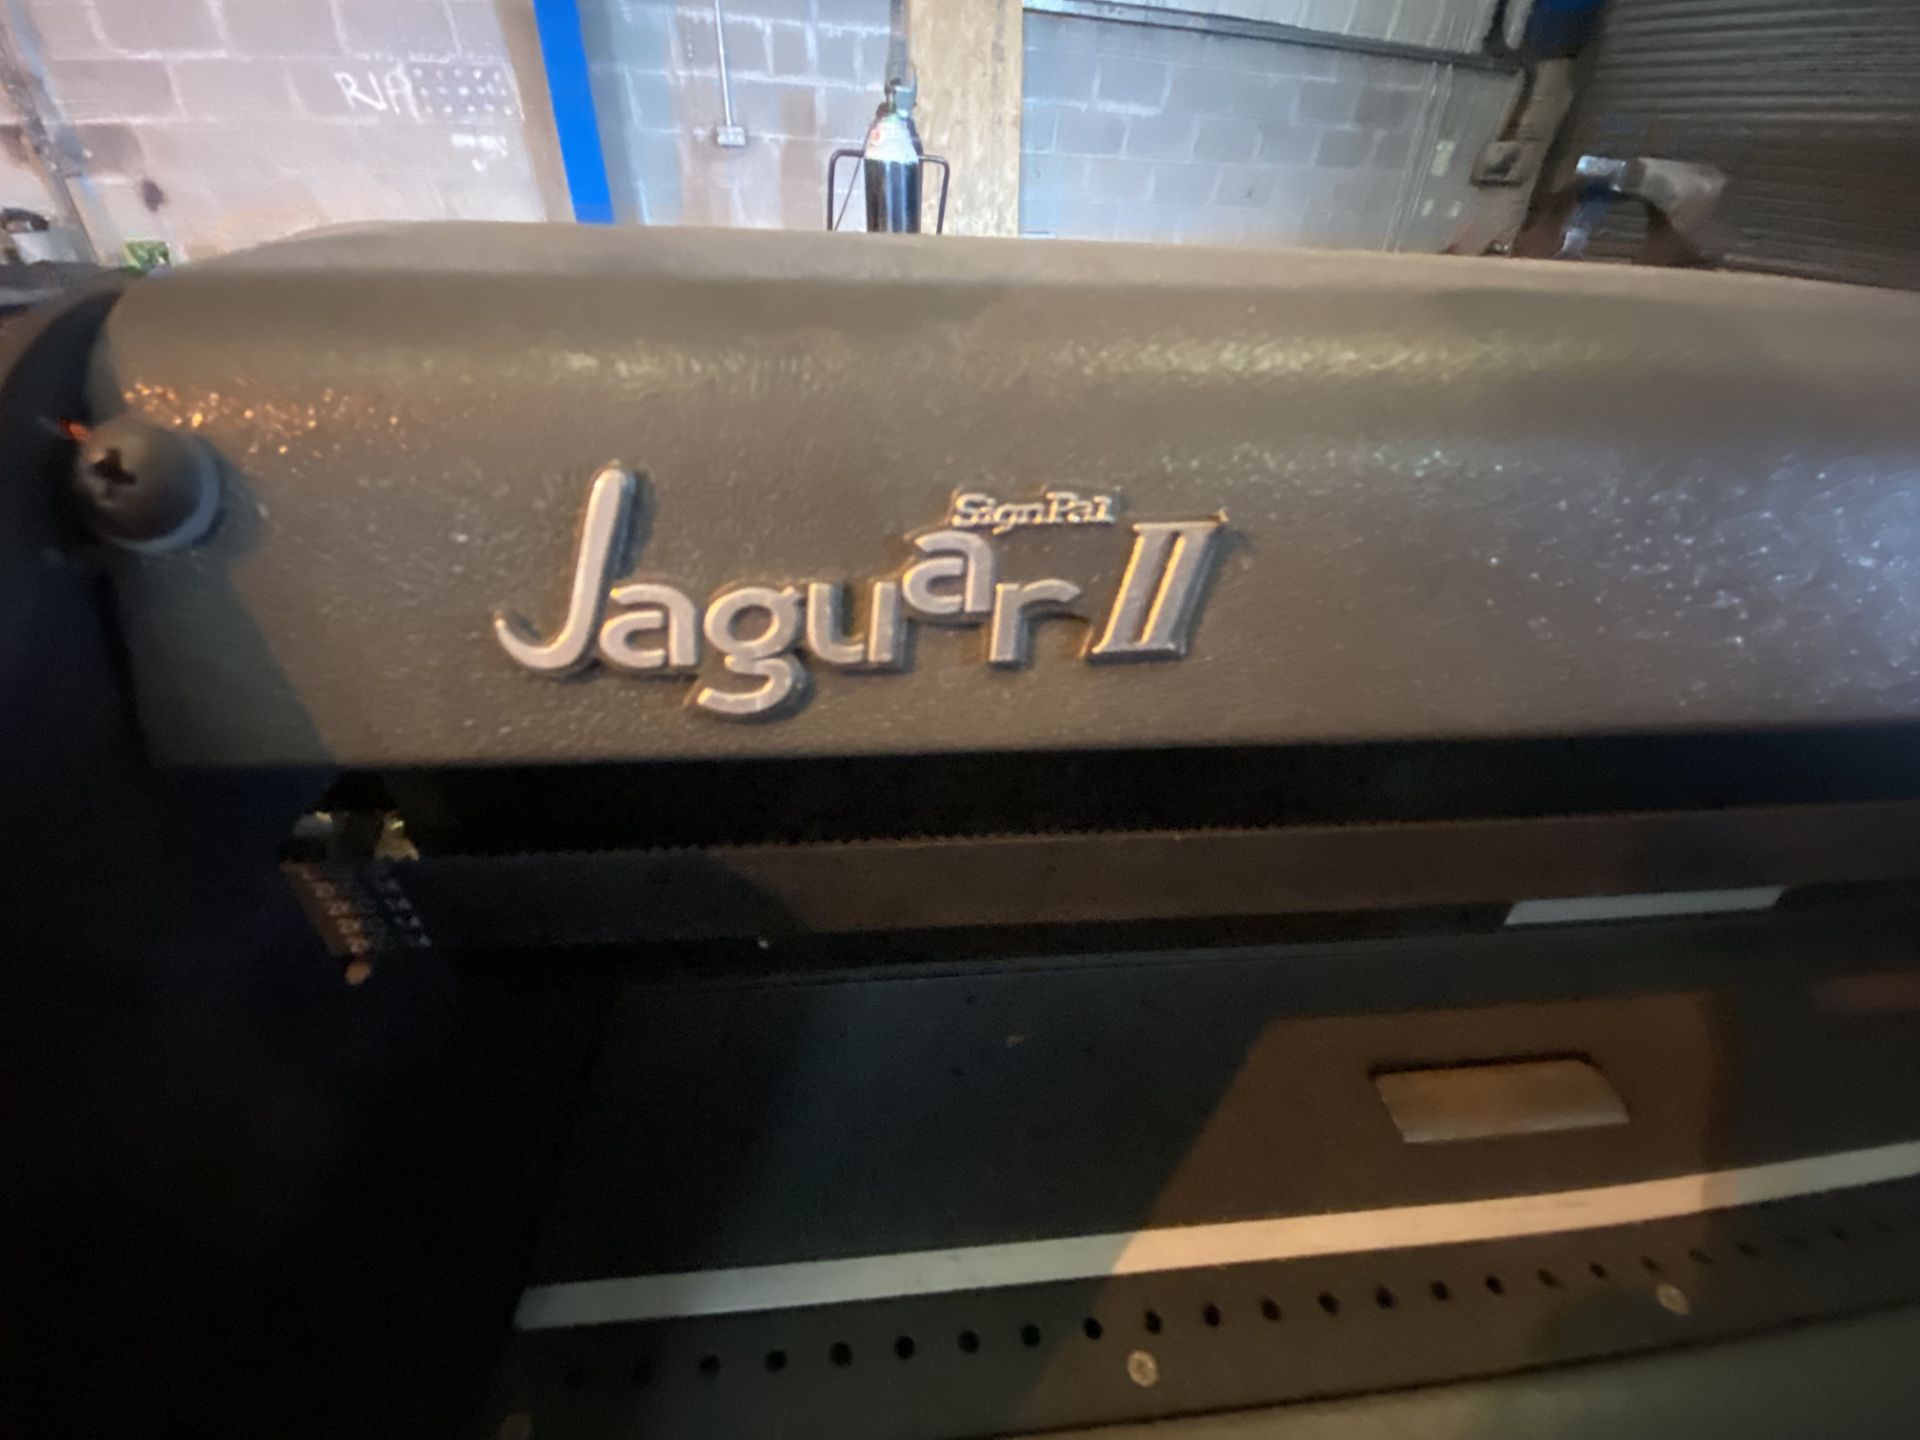 Signpal Jaguar 11 vinyl cutter - Image 2 of 5